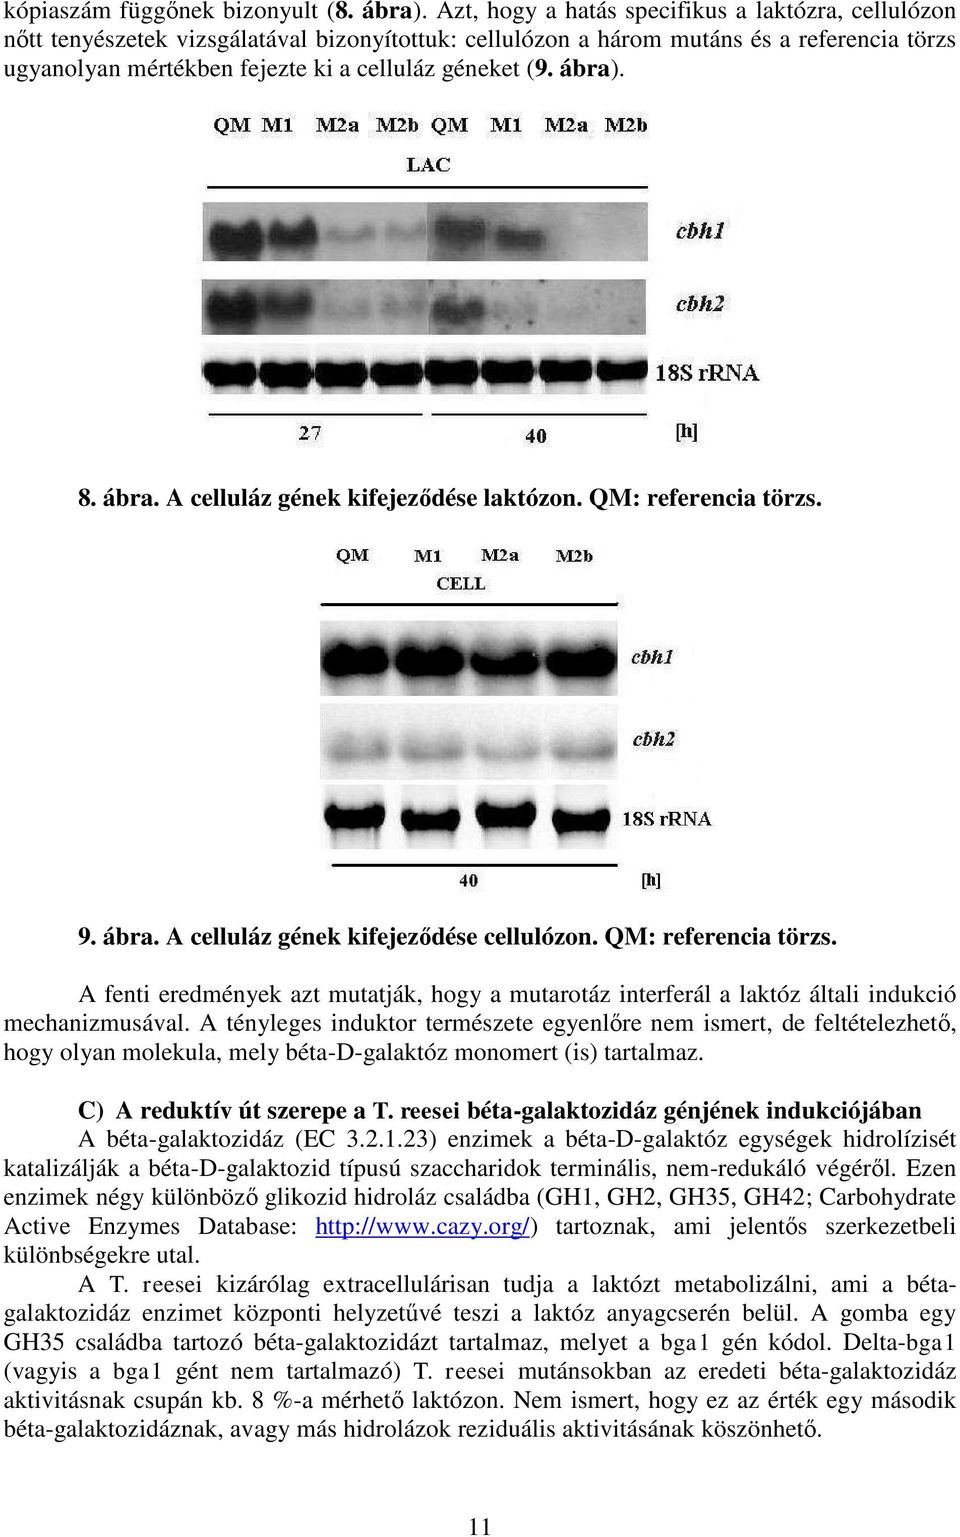 ábra). 8. ábra. A celluláz gének kifejeződése laktózon. QM: referencia törzs. 9. ábra. A celluláz gének kifejeződése cellulózon. QM: referencia törzs. A fenti eredmények azt mutatják, hogy a mutarotáz interferál a laktóz általi indukció mechanizmusával.